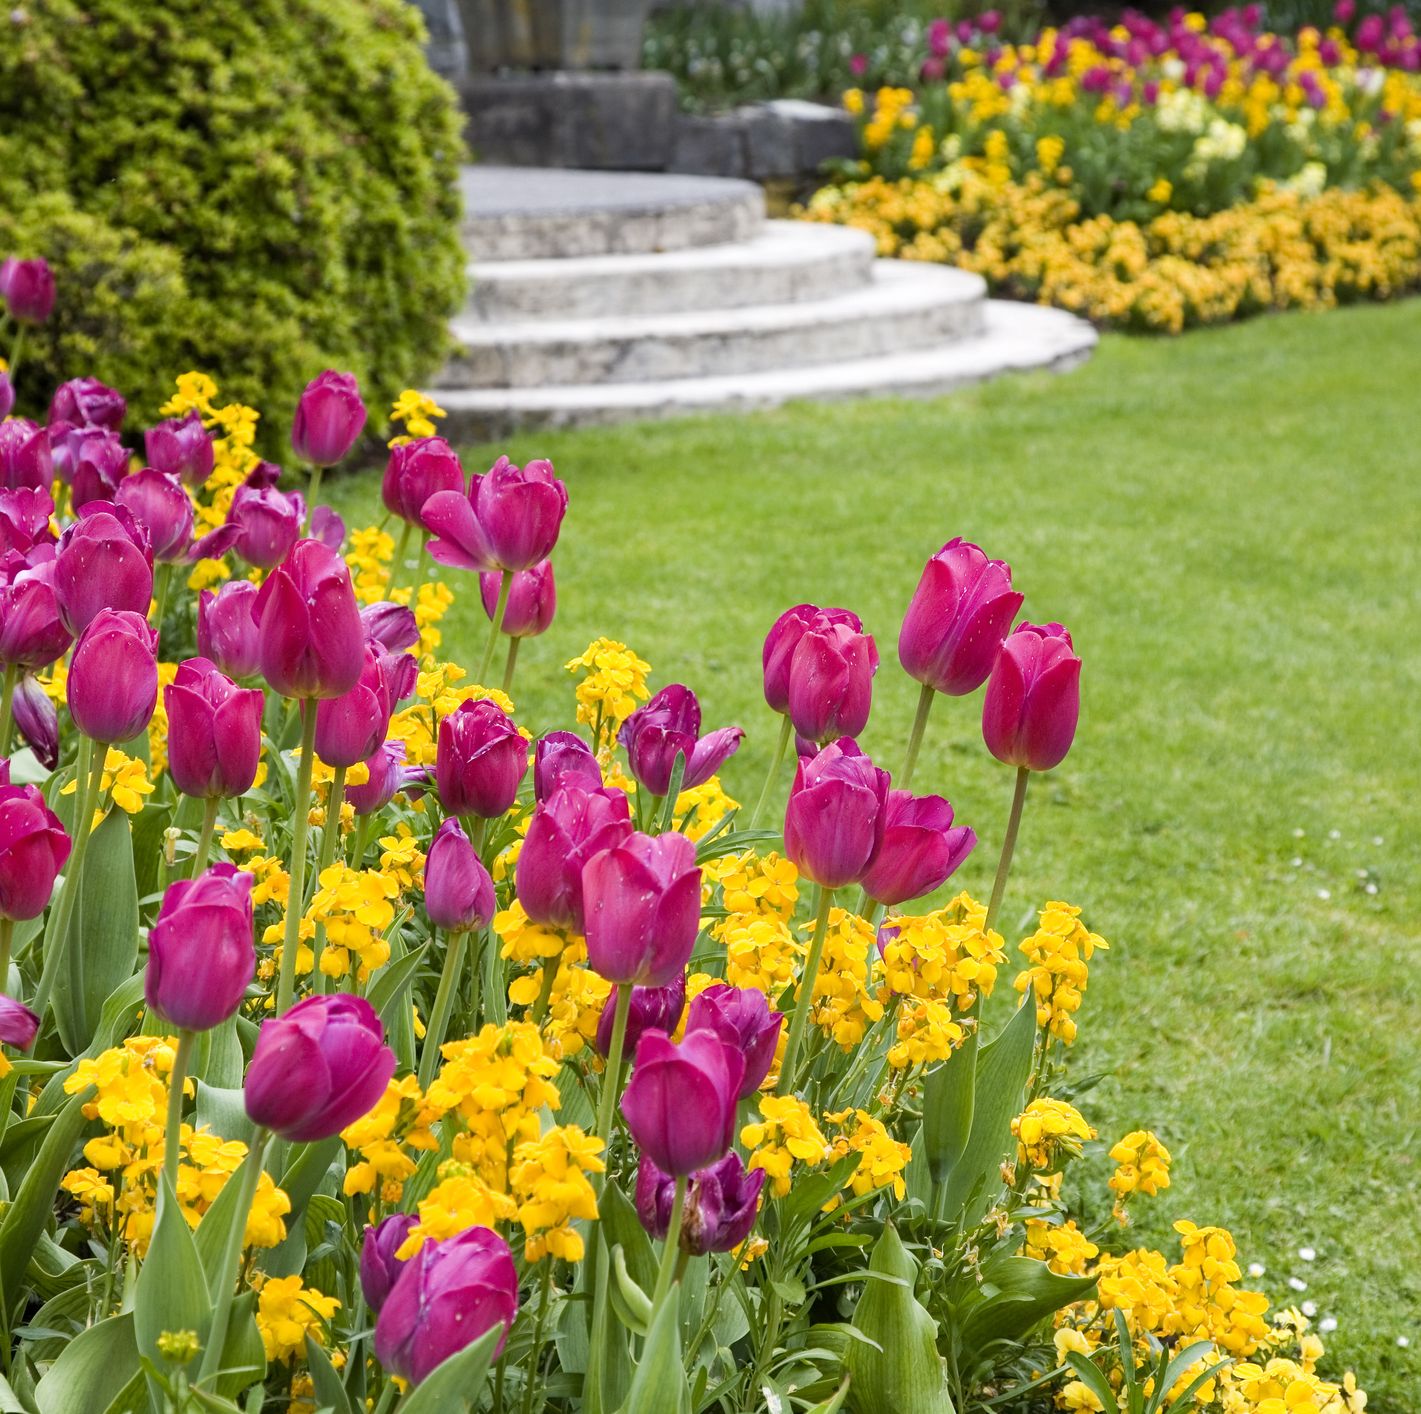 flower tulip garden